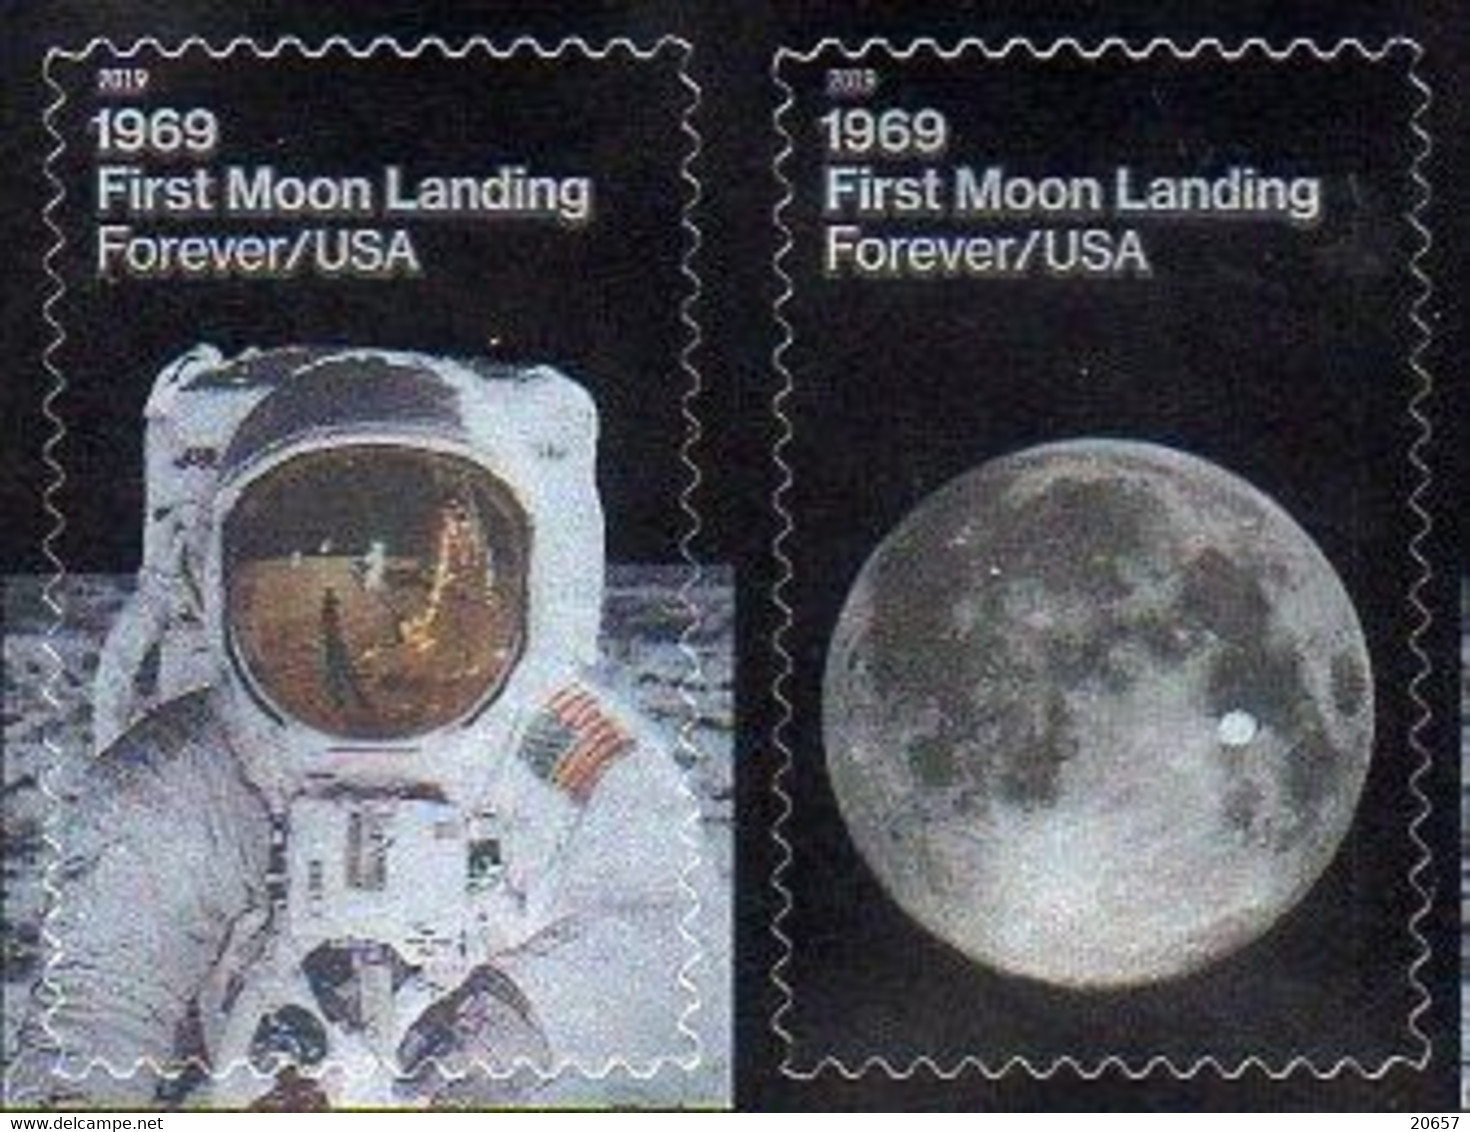 Etats-Unis USA 5256/57 Moon Landing, Apollo, Armstrong Et Aldrin, Photographie, July 20 1969 - Etats-Unis